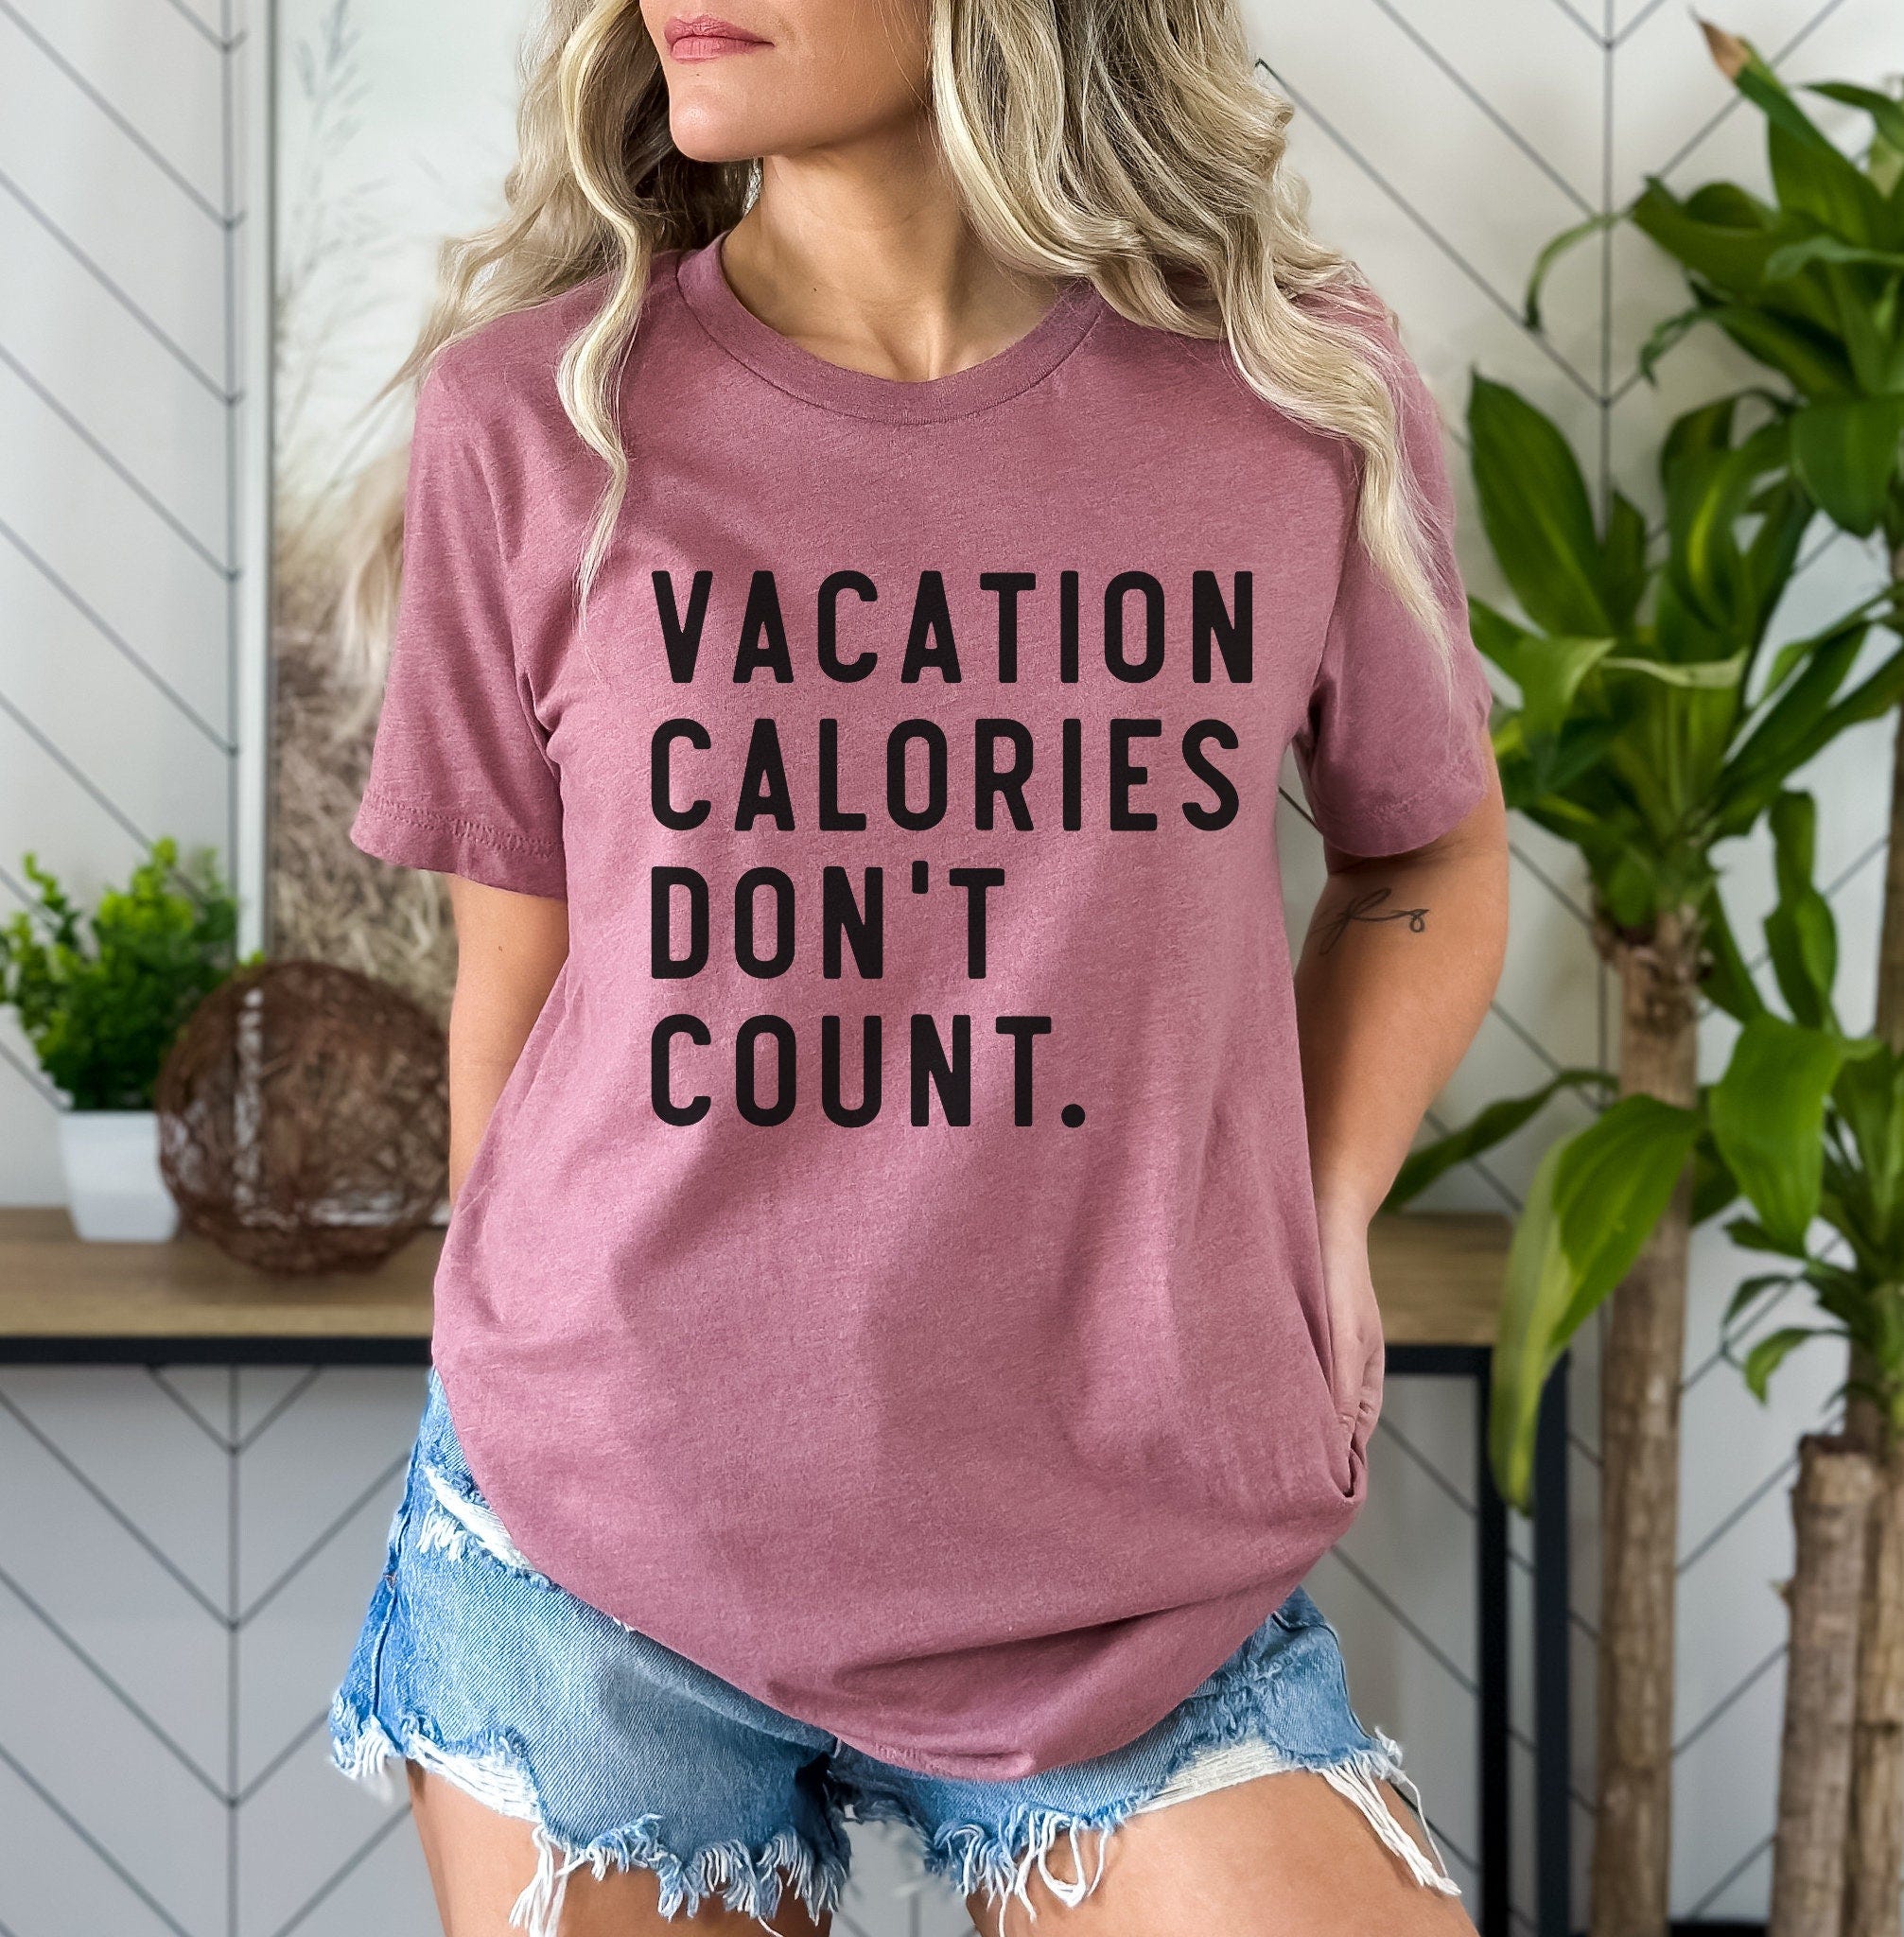 vacation calories don